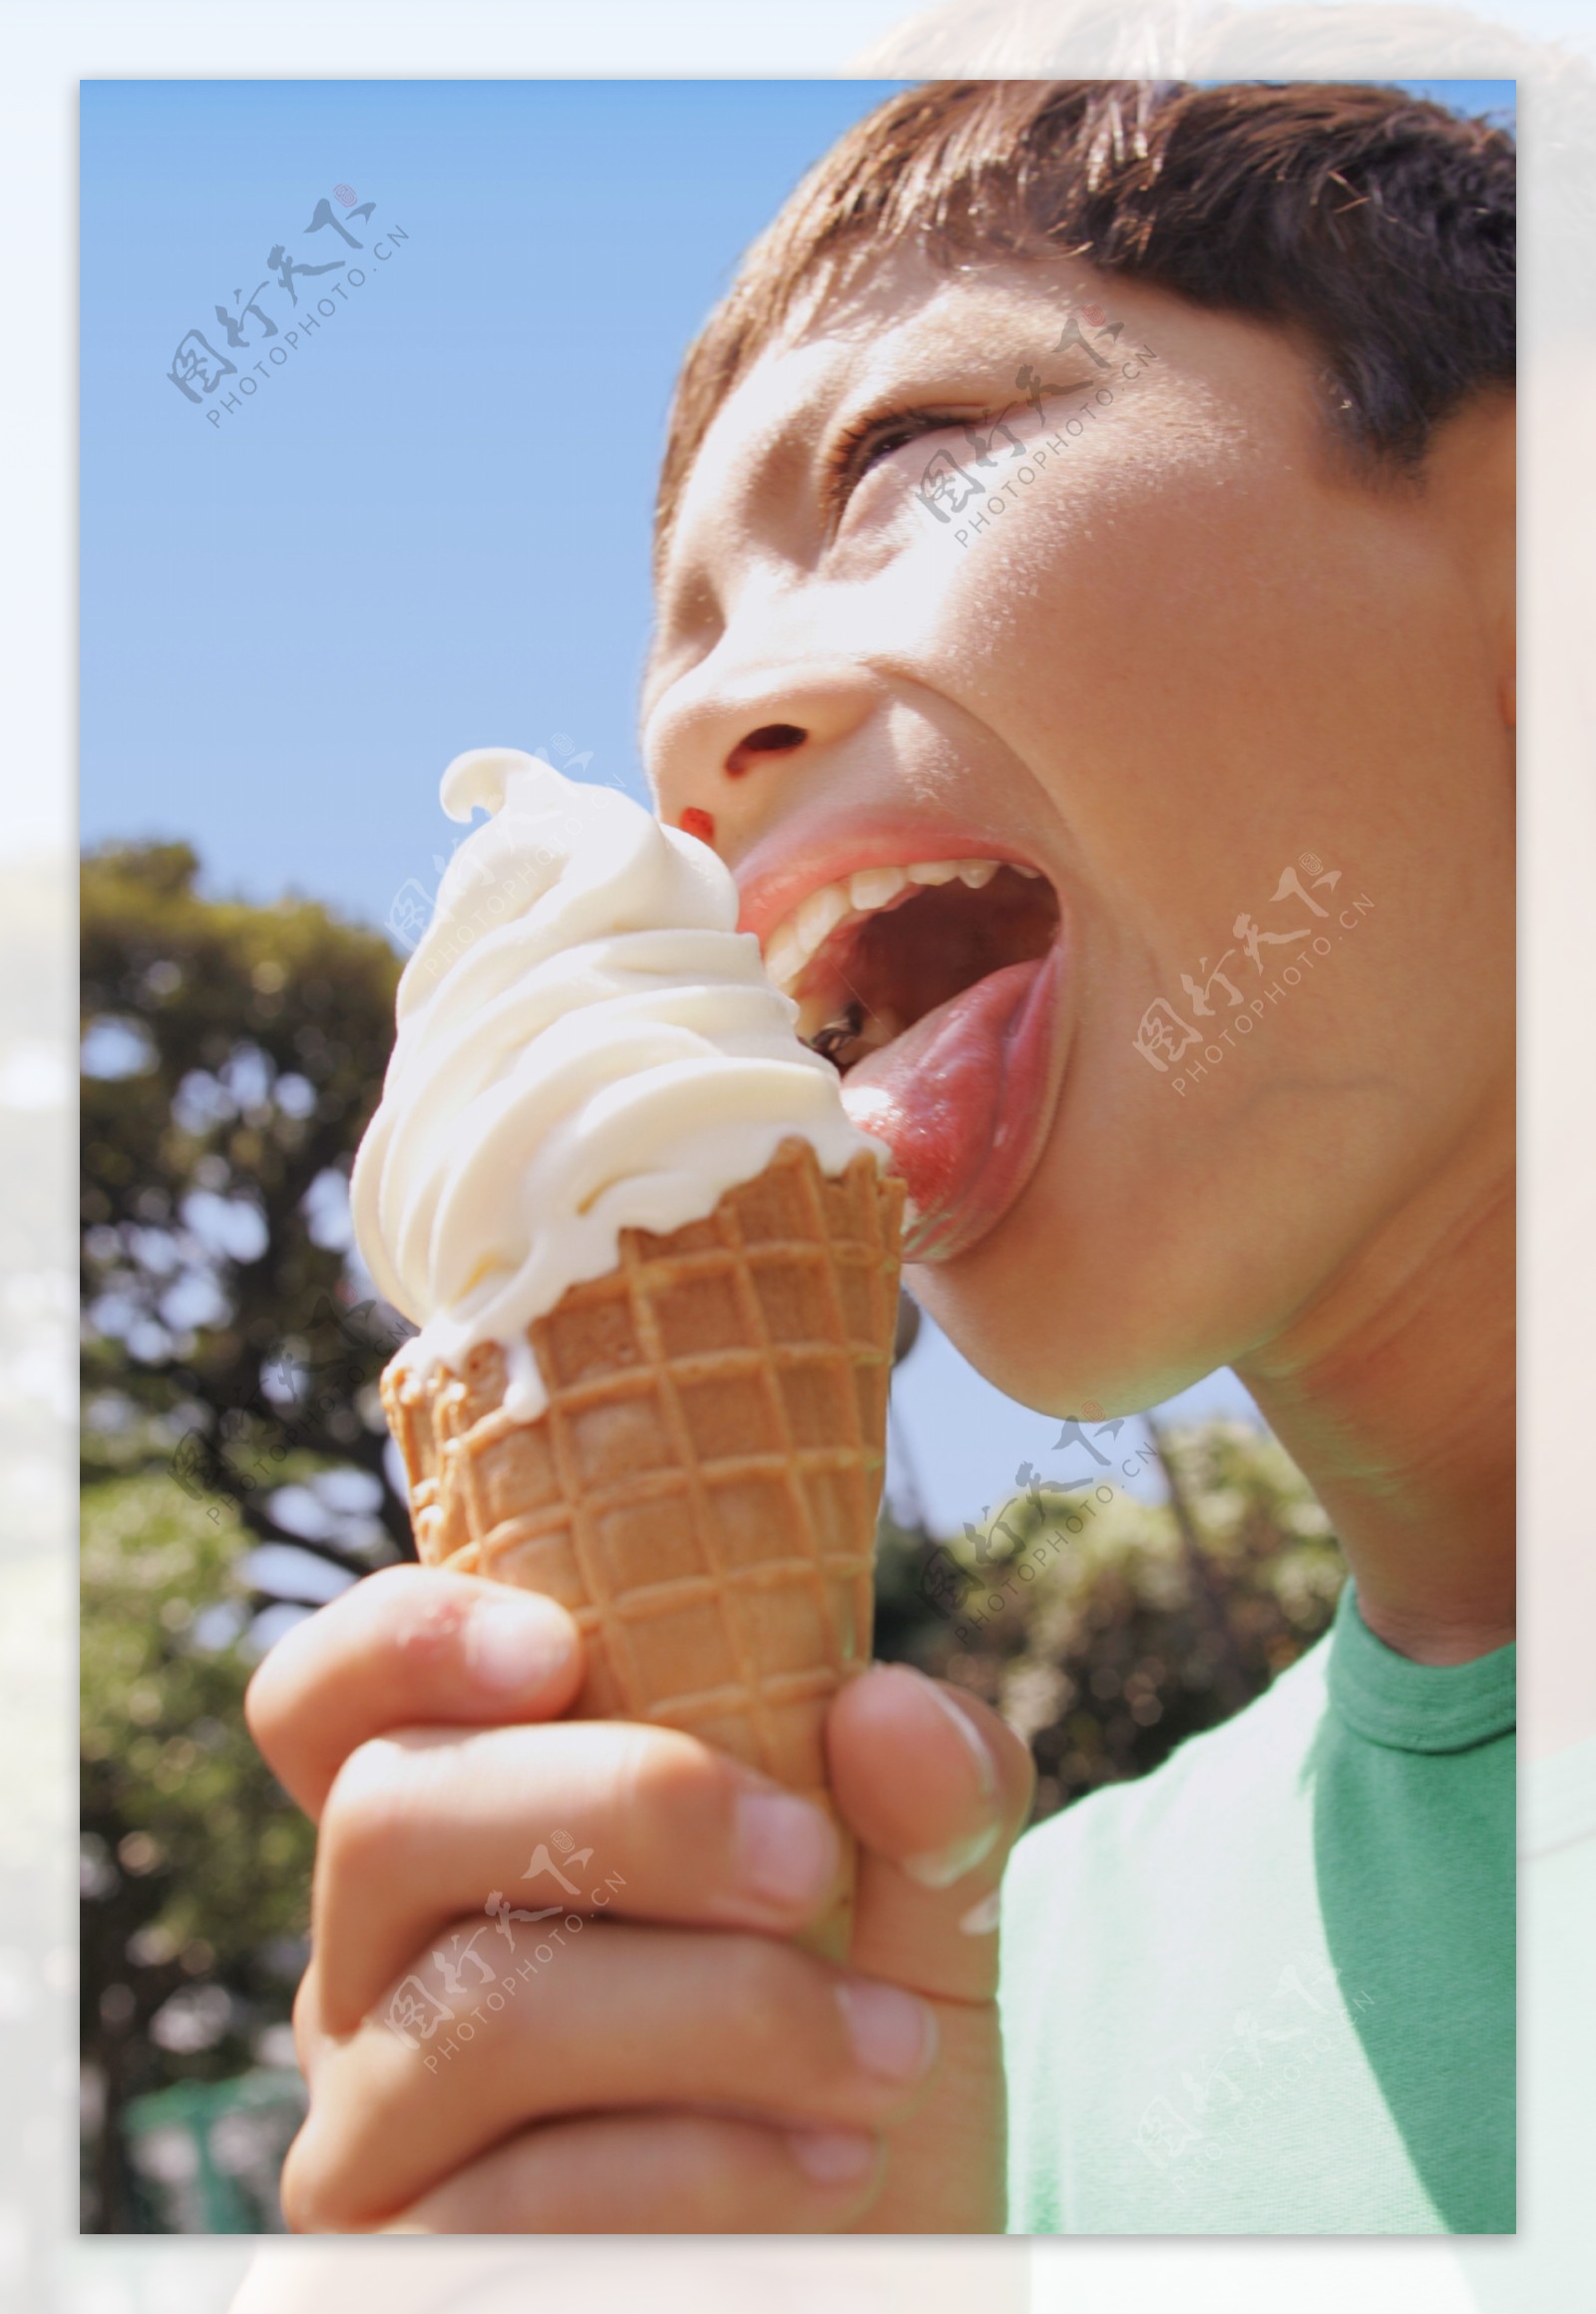 吃冰淇淋的男孩图片